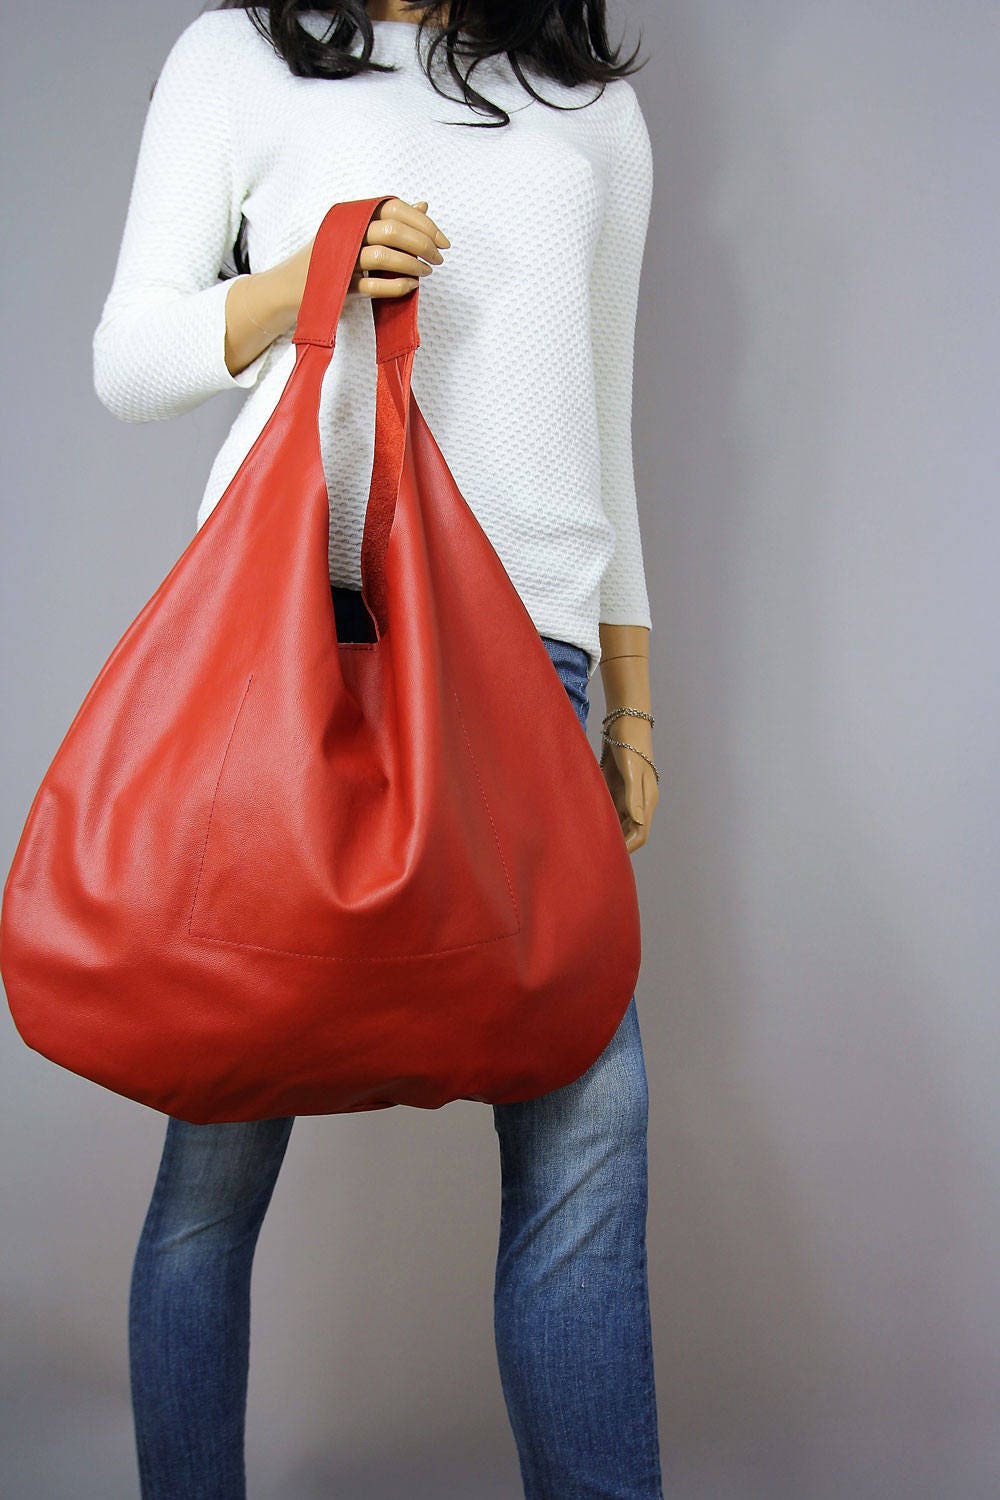 Buy Soye Women Handbags Hobo Bags Shoulder Tote Large